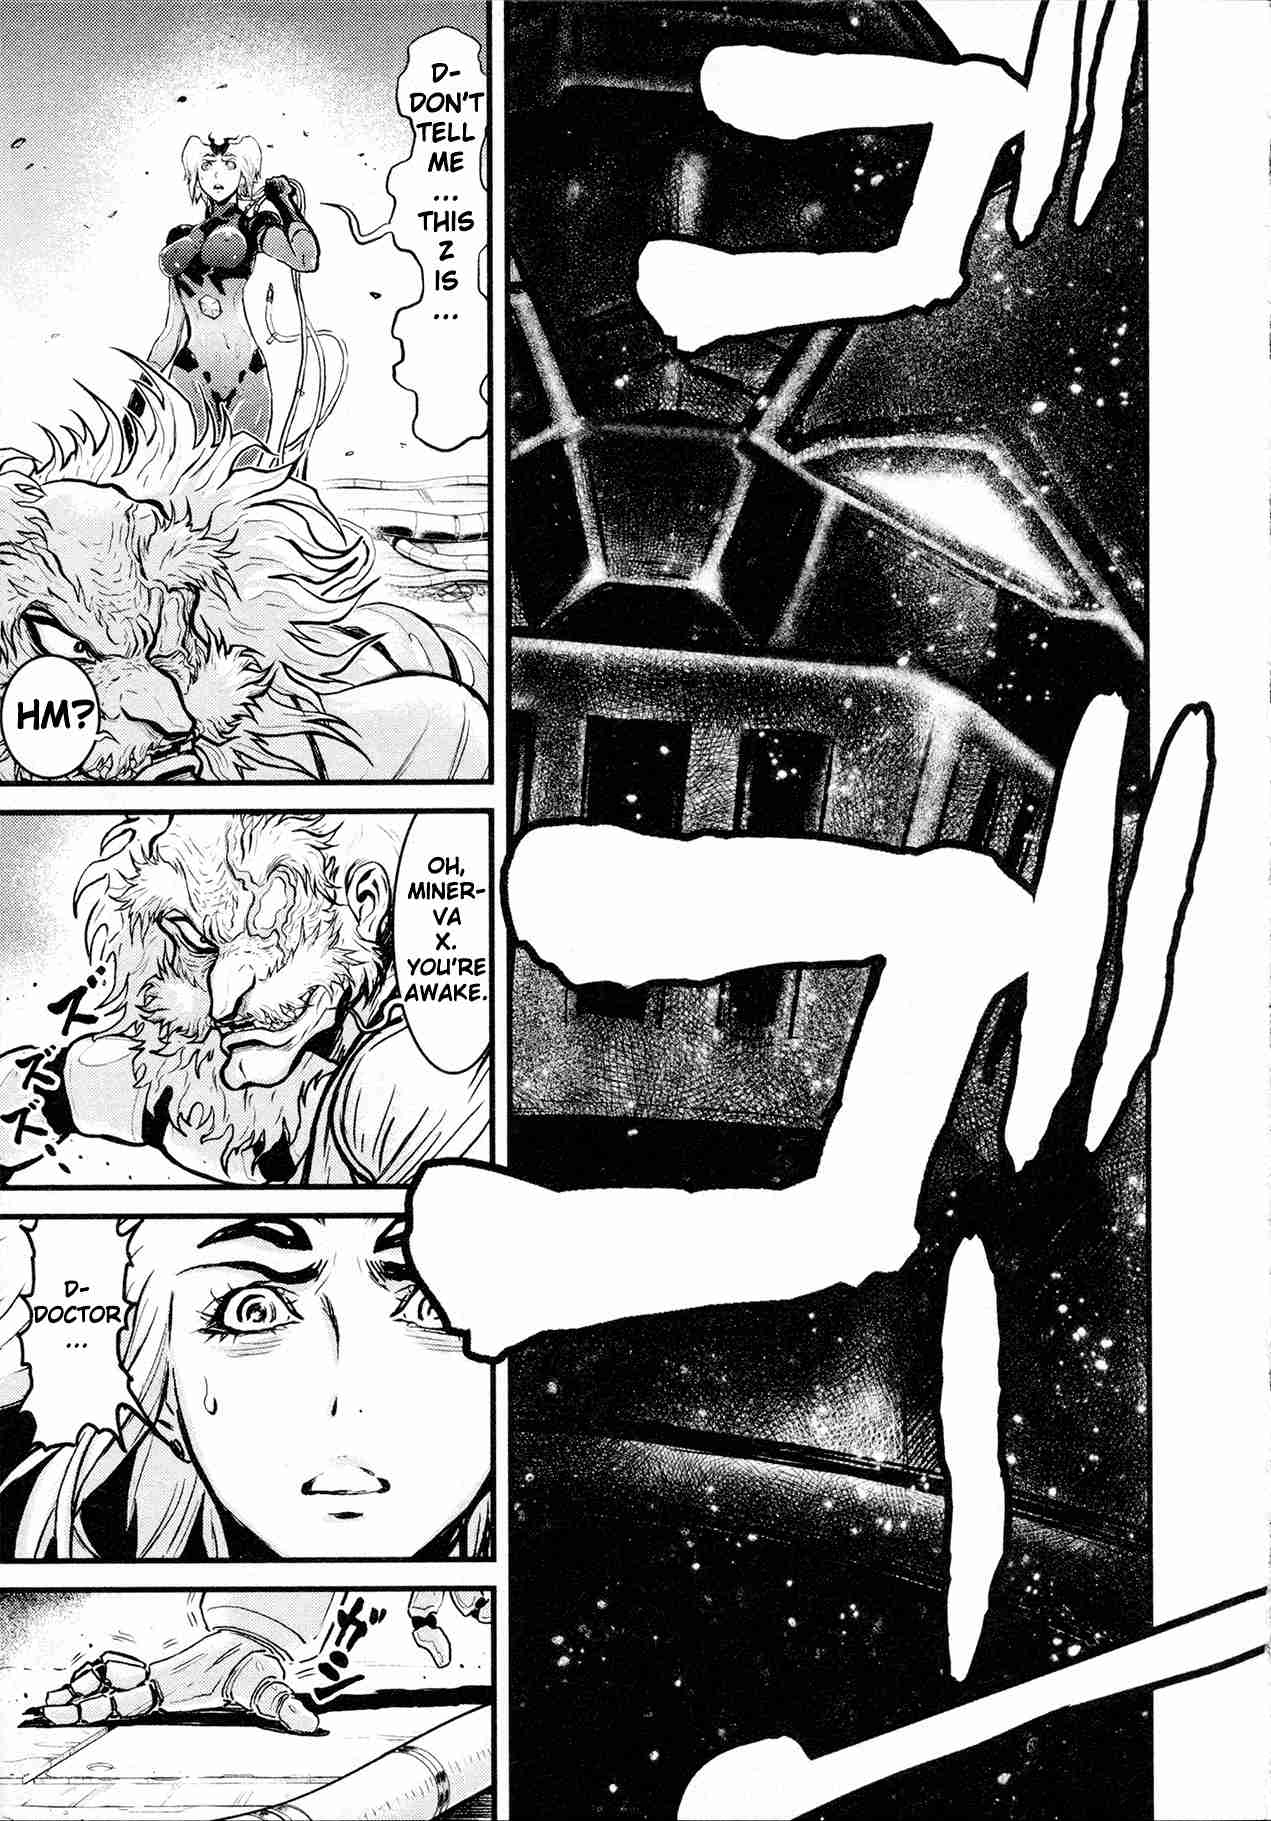 Shin Mazinger Zero Vol. 6 Ch. 29 Minerva X in Despair